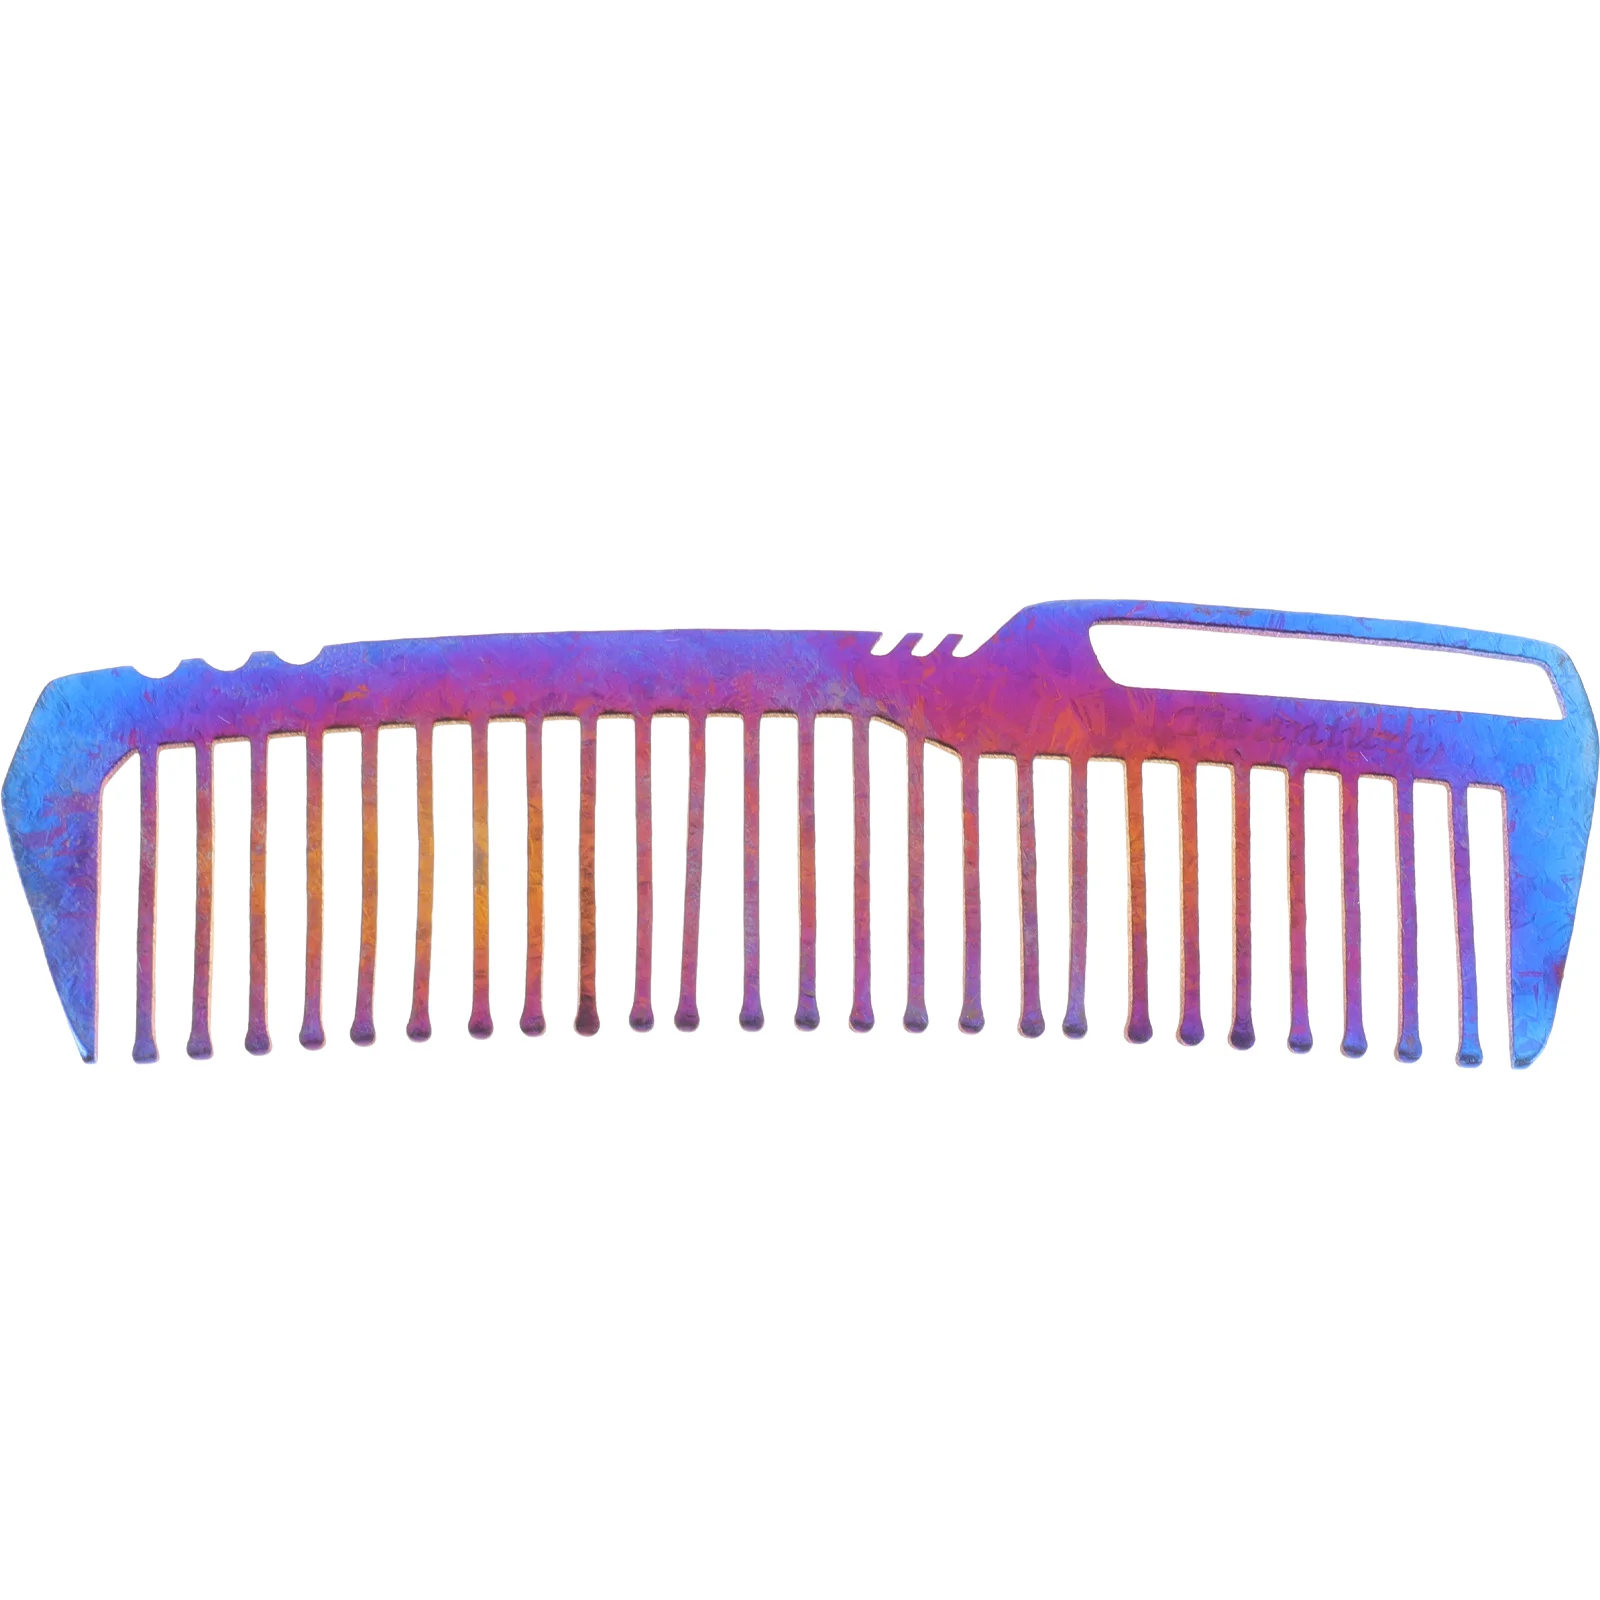 

Barber Combs Accessories Barber Comb Styling Comb Men Titanium Comb Does Not Rust Styling Comb Salon